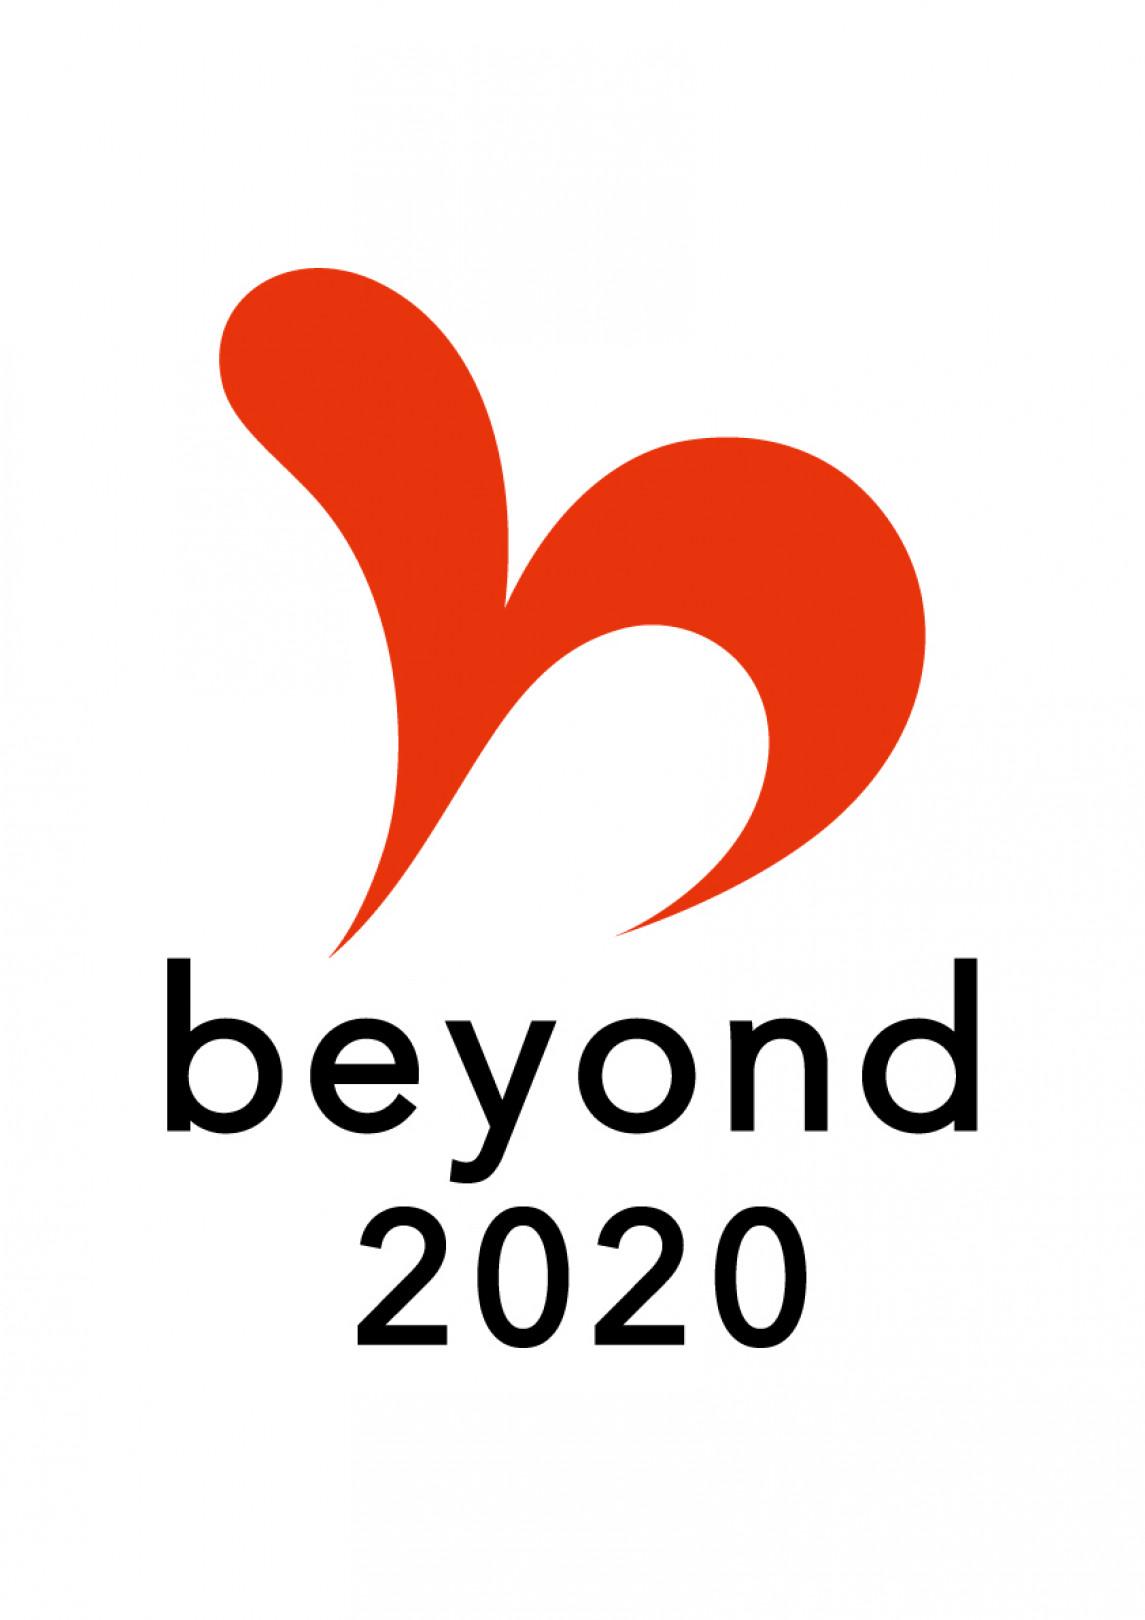 内閣官房が認証する「beyond2020プログラム」